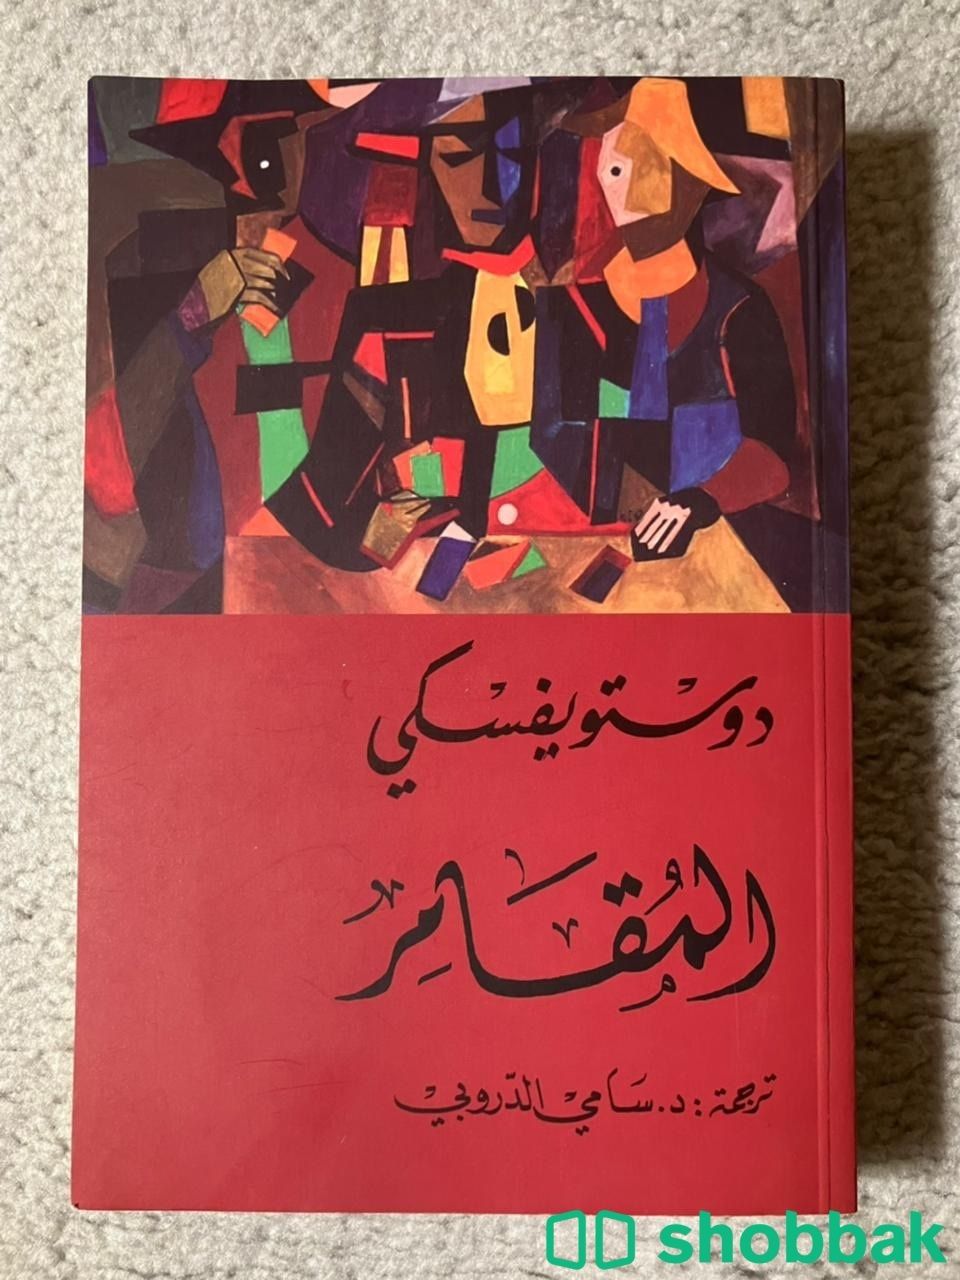 كتاب دستيوفيسكي ذكريات في منزل الاموات ، المقامر Shobbak Saudi Arabia